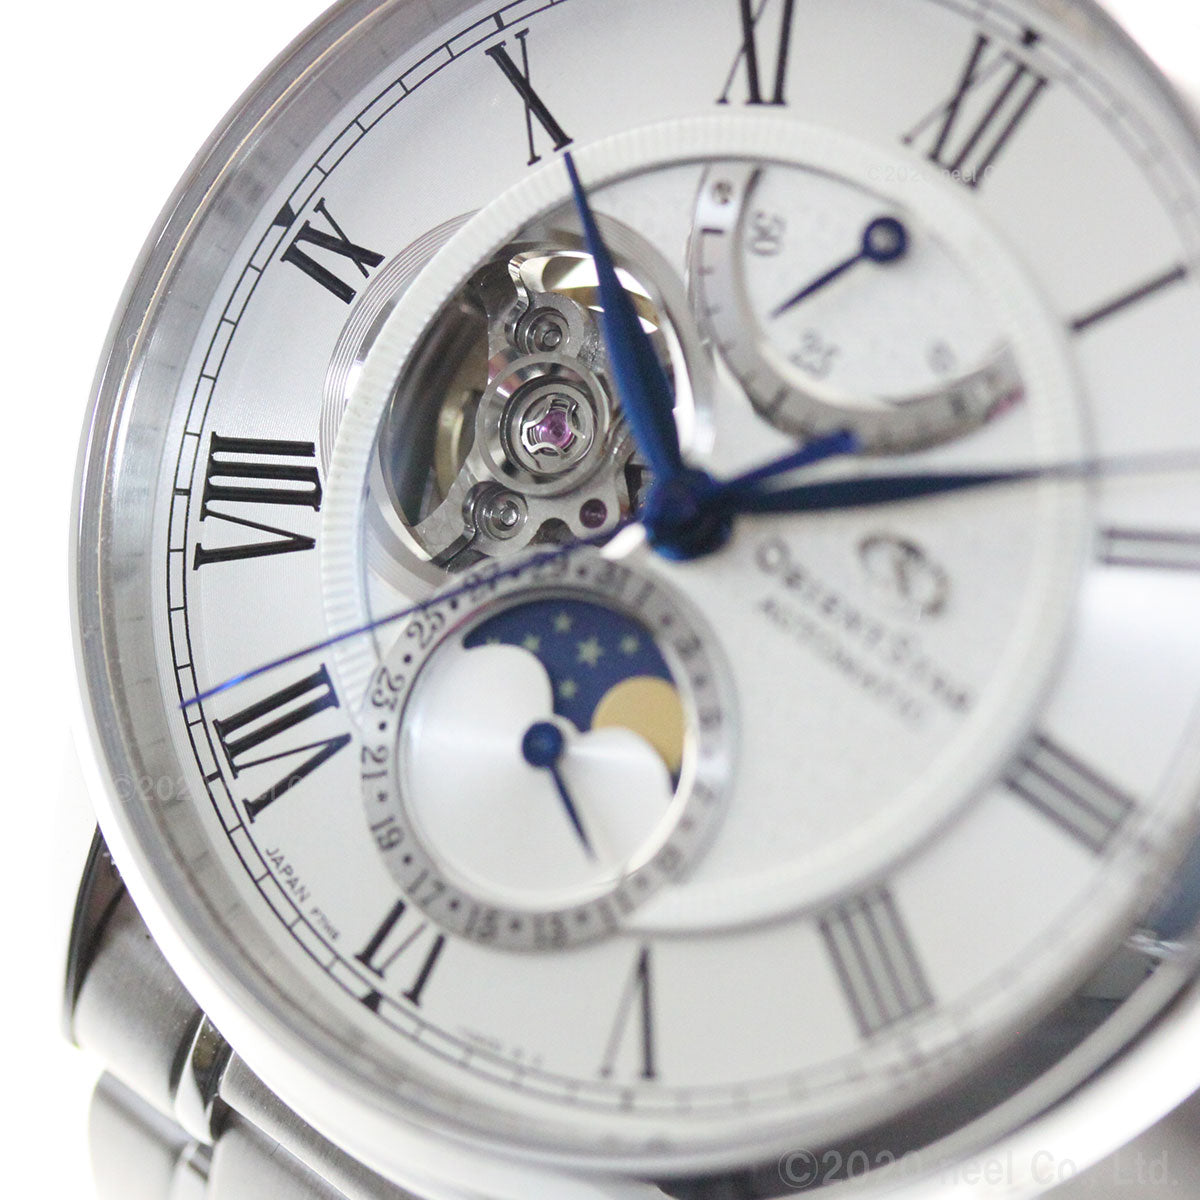 オリエントスター ORIENT STAR 腕時計 メンズ 自動巻き 機械式 クラシック CLASSIC メカニカルムーンフェイズ RK-AY0102S